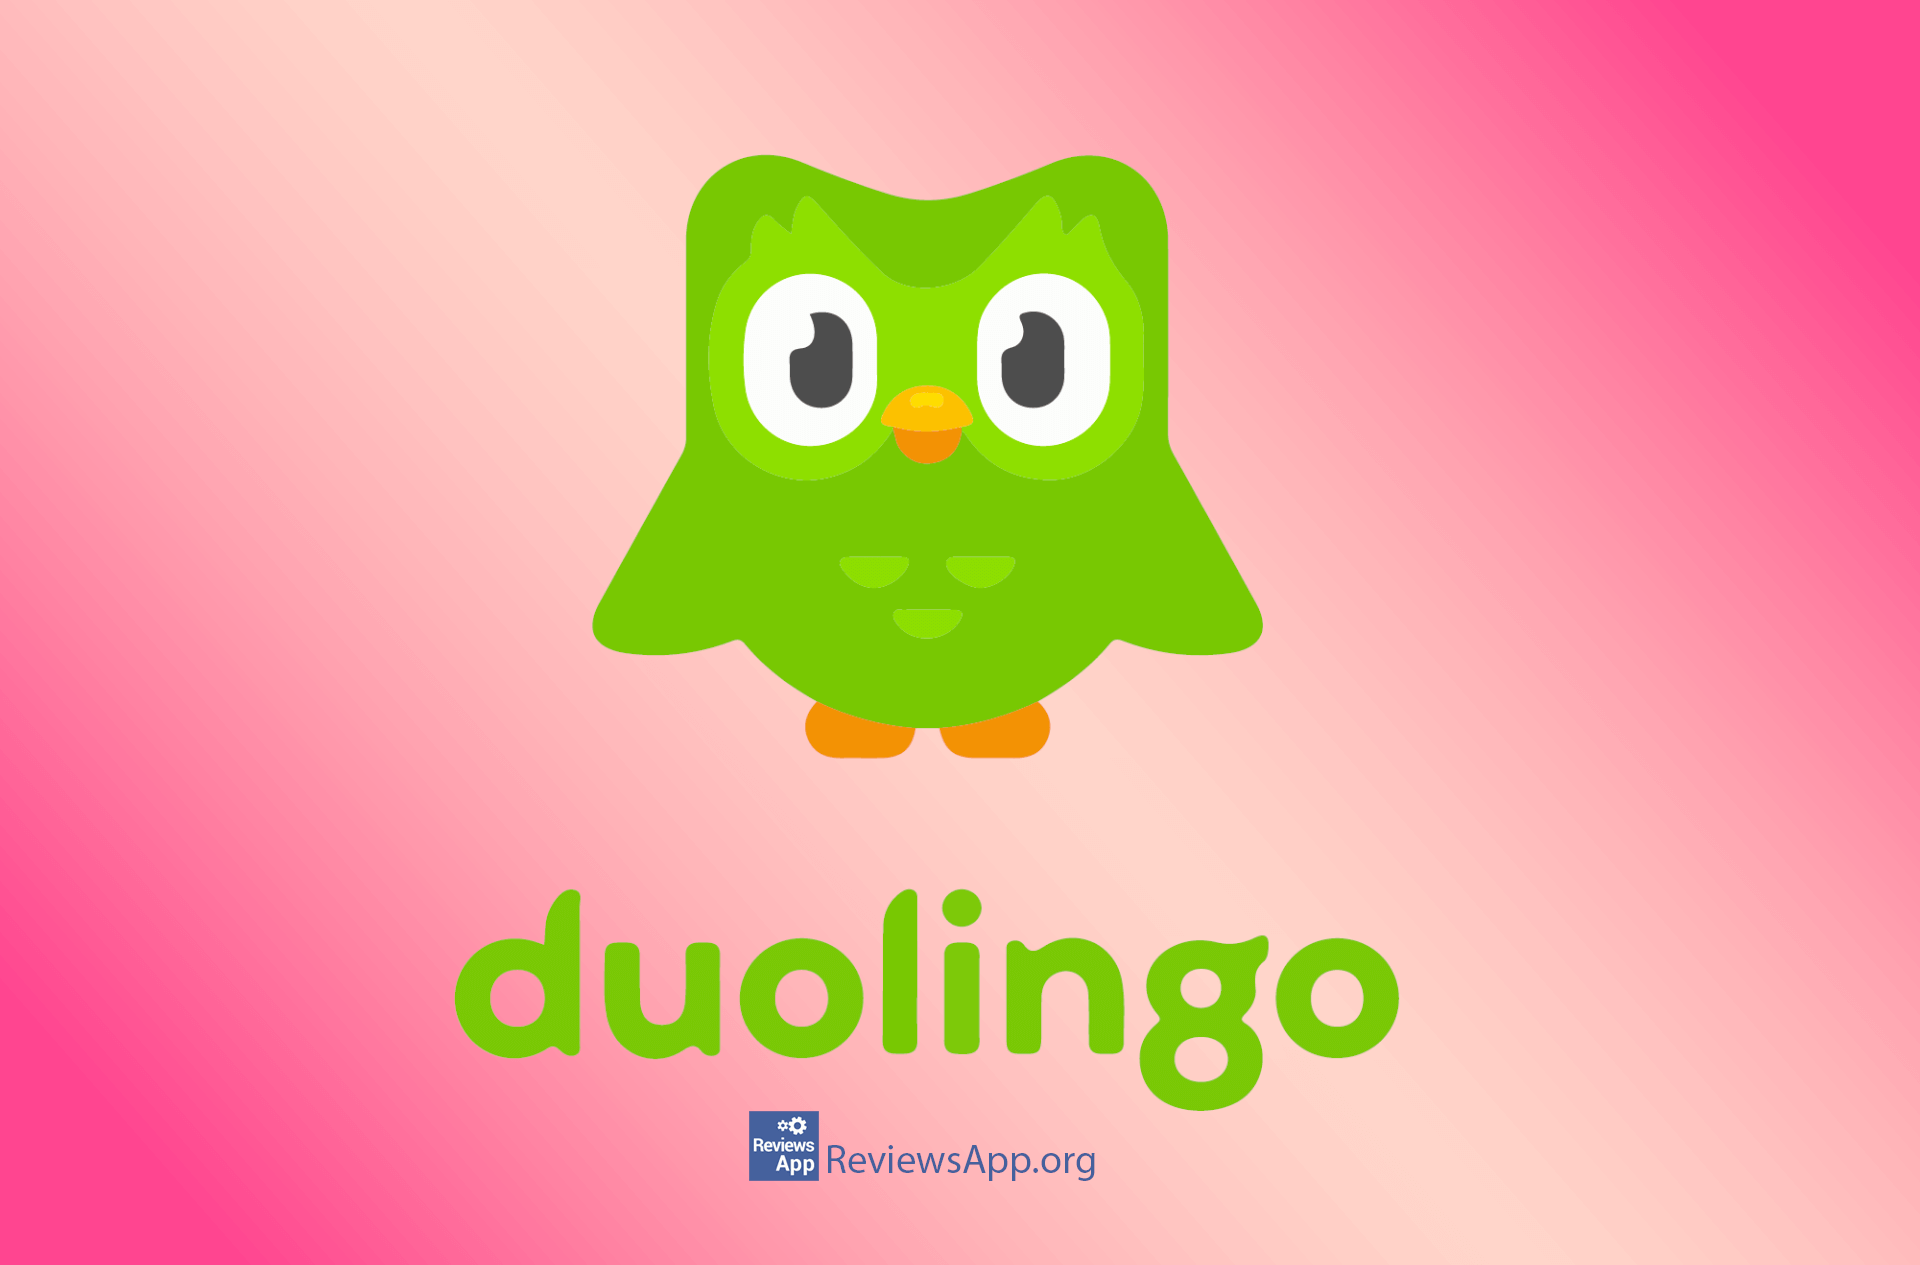 duolingo is